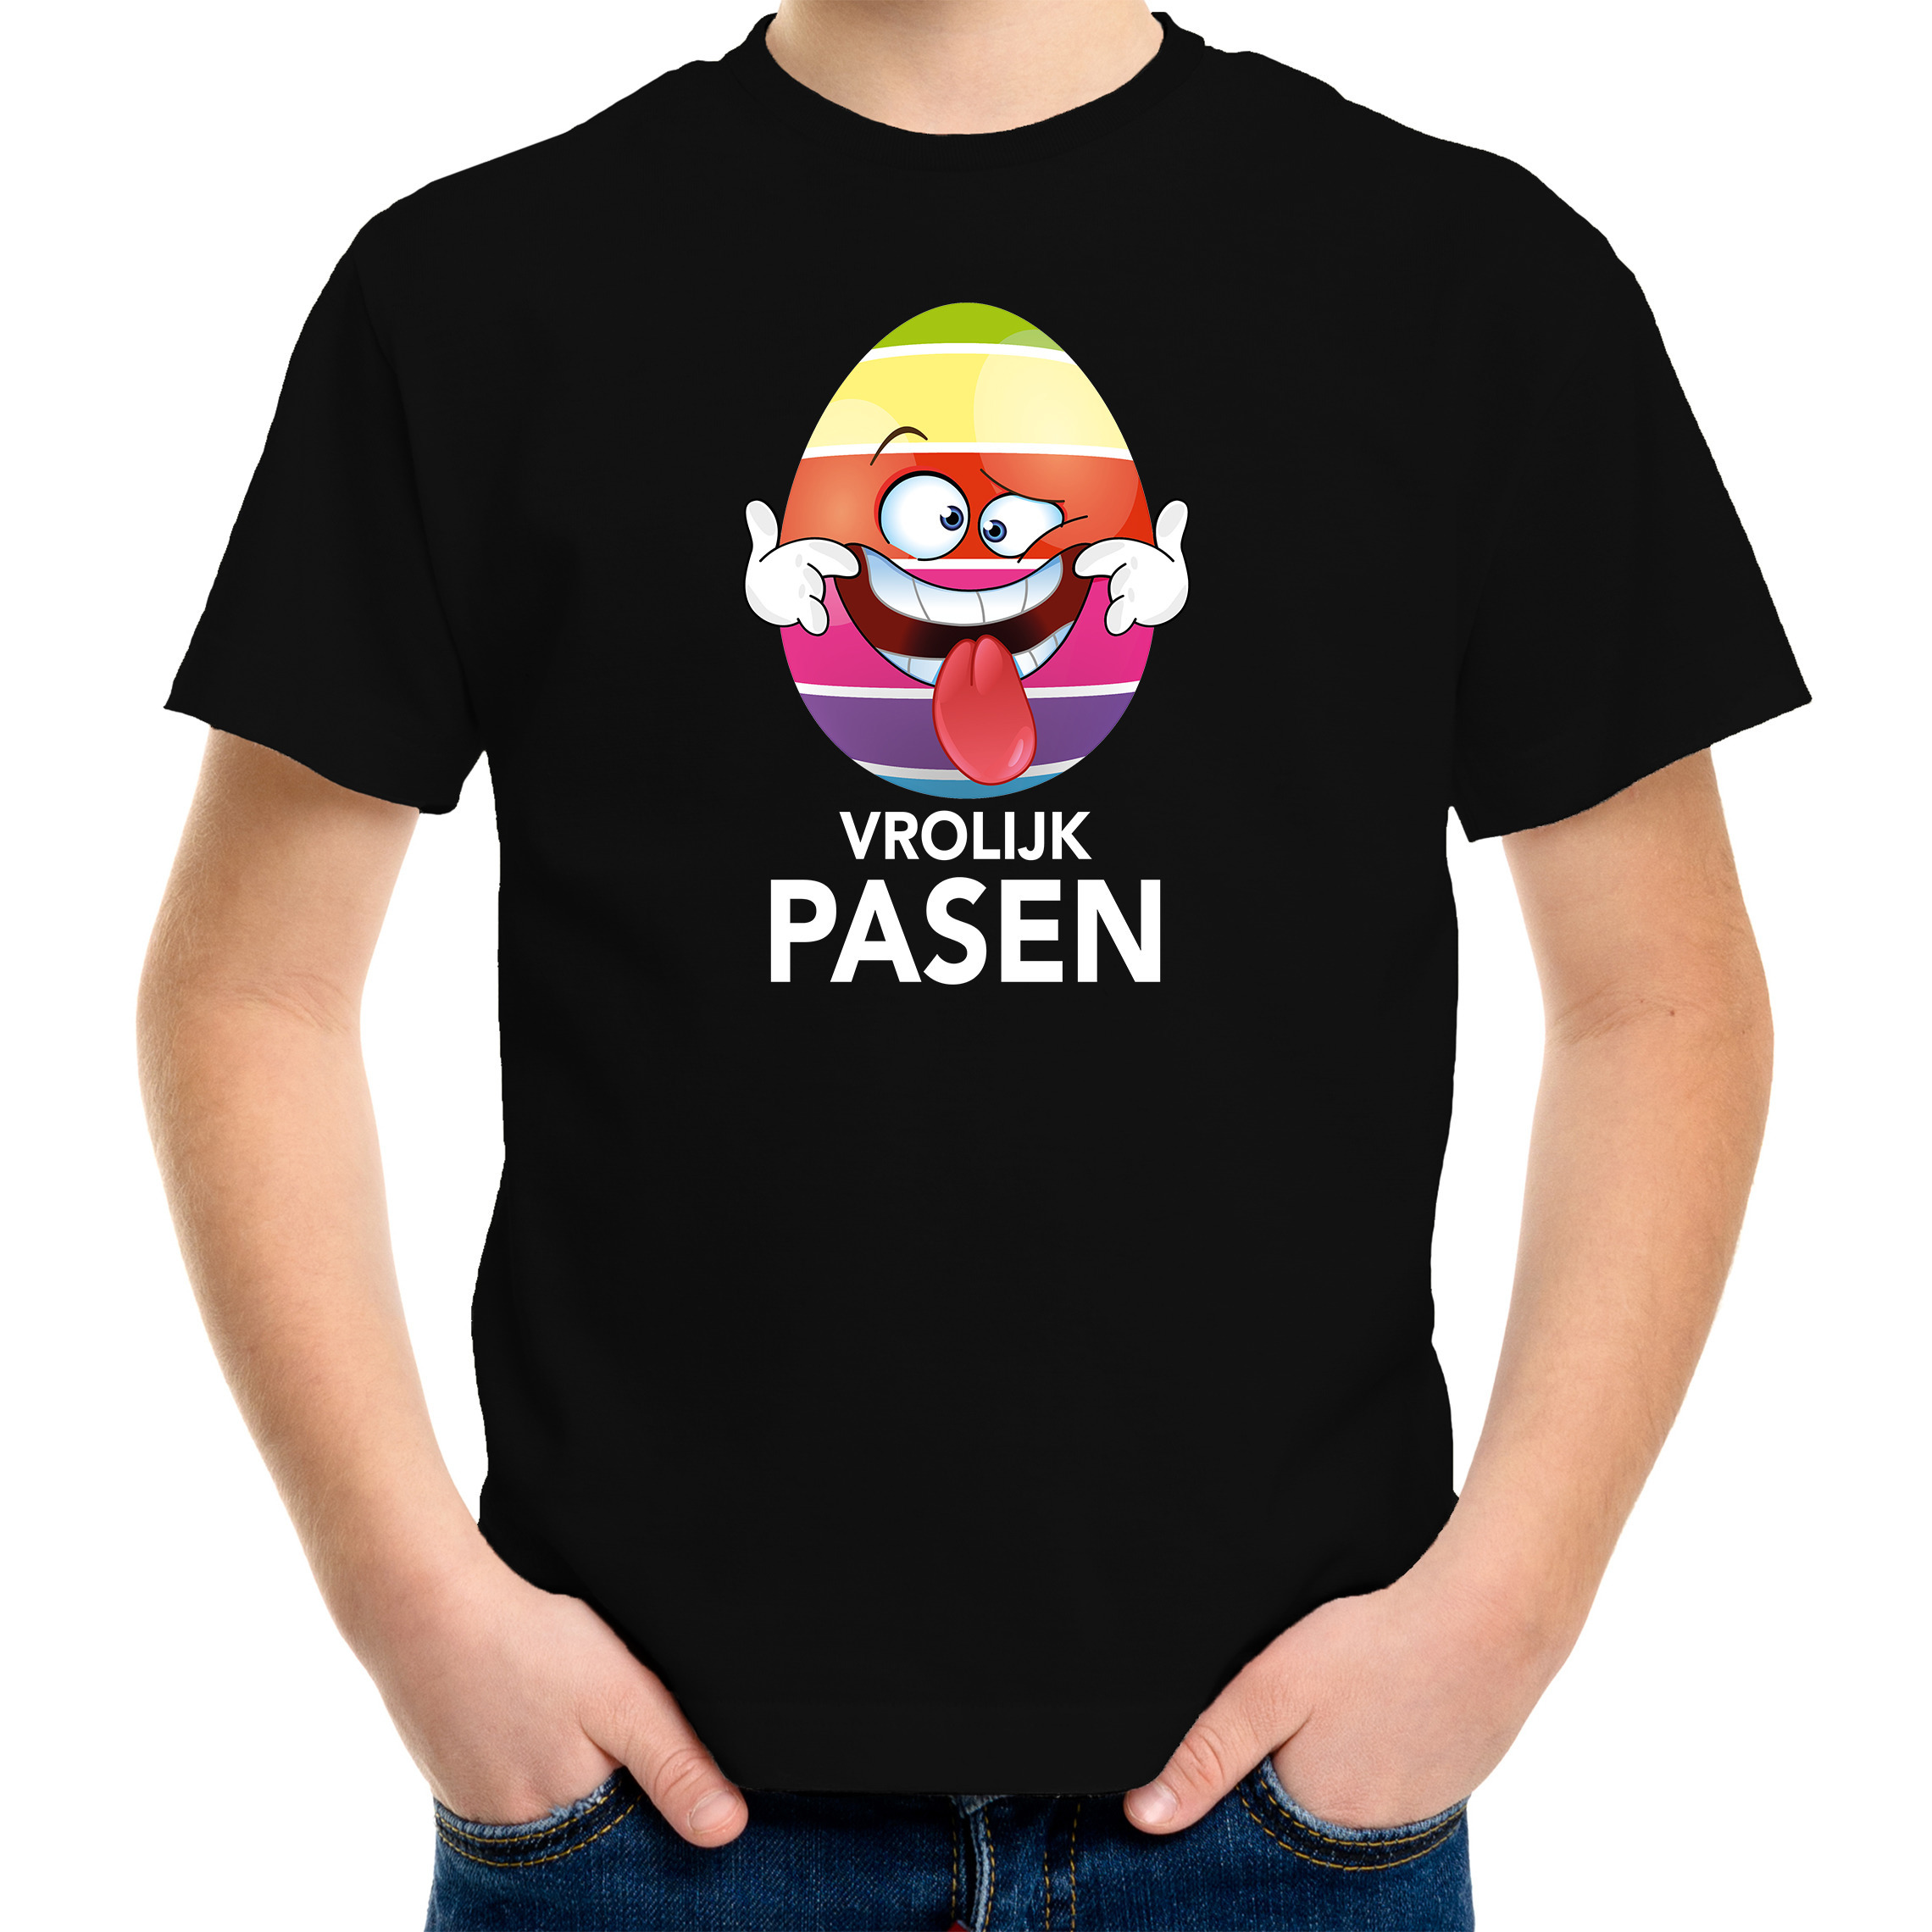 Paasei die tong uitsteekt vrolijk Pasen t-shirt zwart voor kinderen Paas kleding-outfit